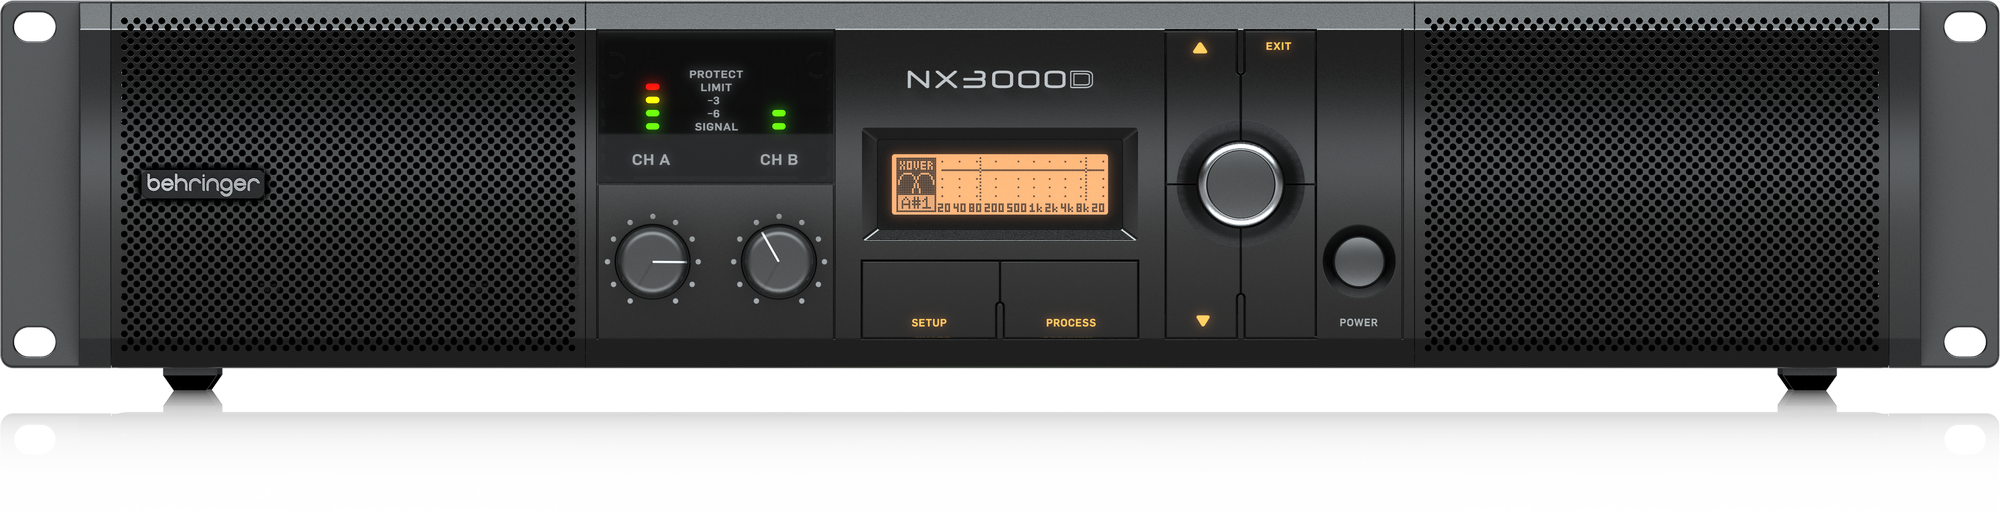 Behringer NX3000D 